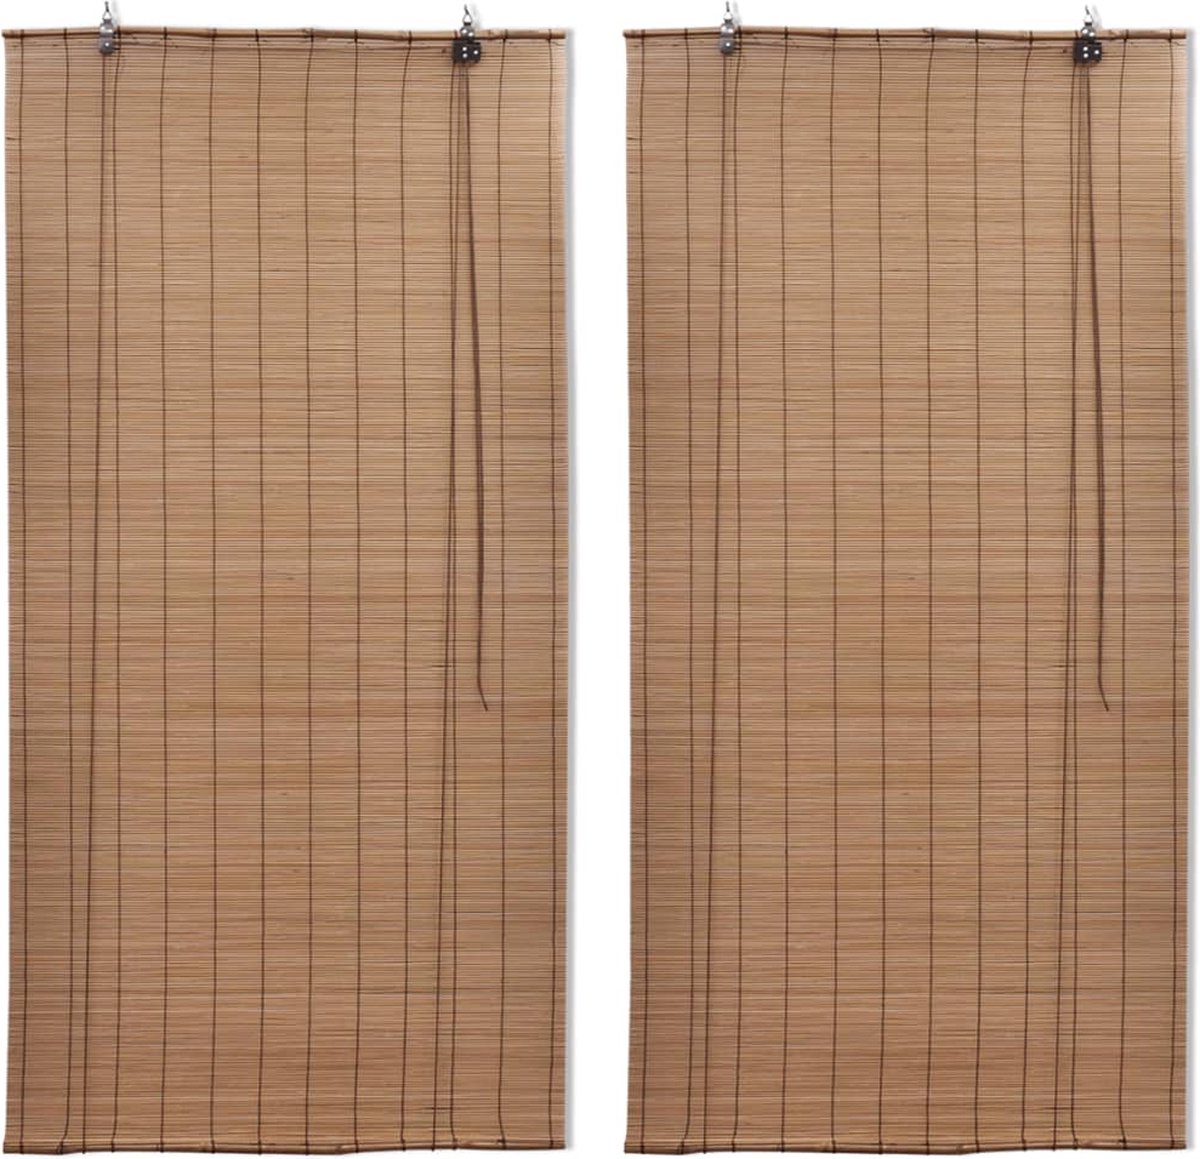 VidaLife Rolgordijnen 2 st 150x220 cm bamboe bruin